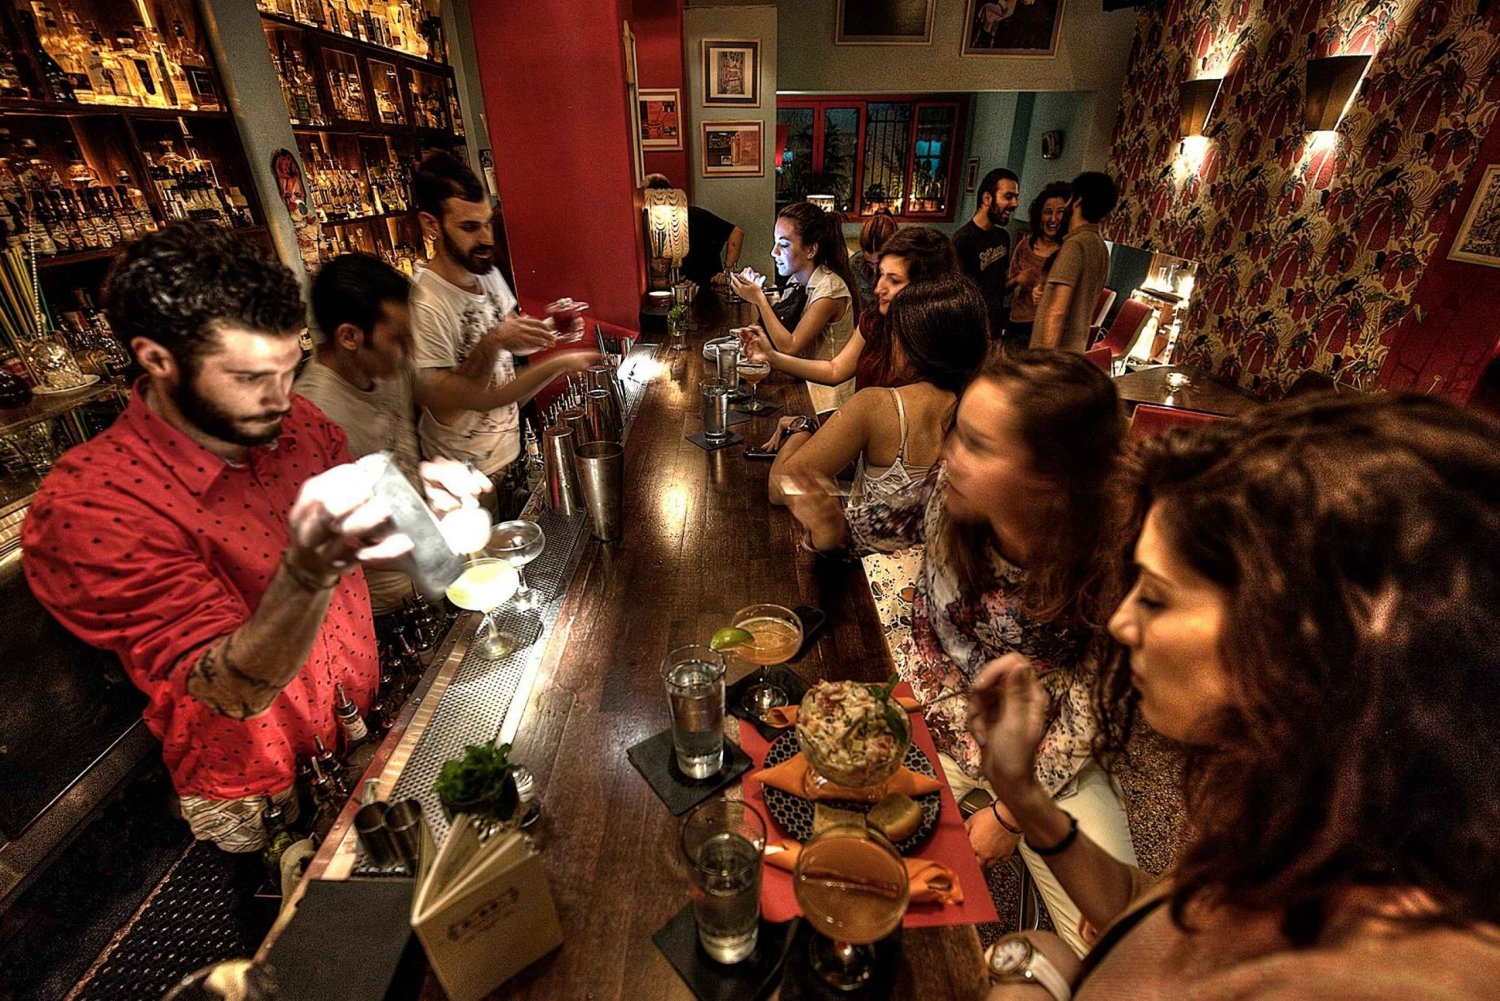 Athene bij nacht: bezienswaardigheden bekijken, sterke dranken en eten